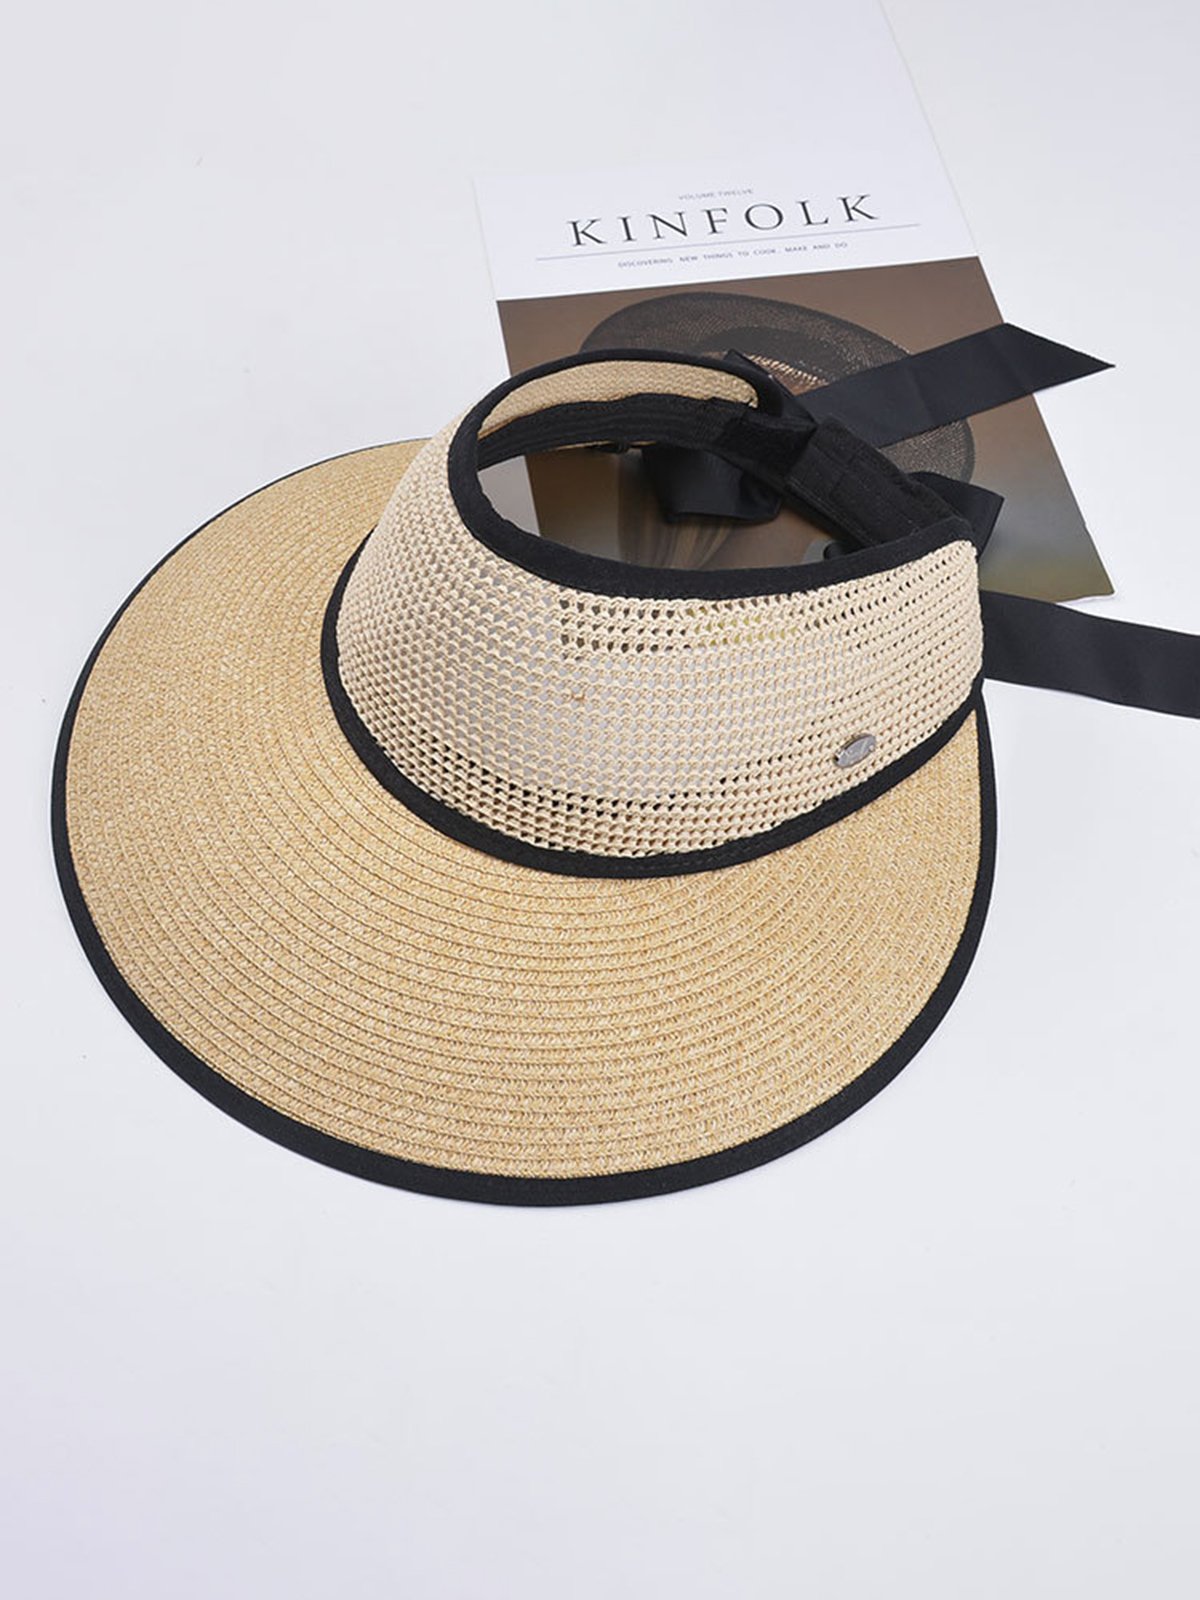 Beach Folding Sun Hat